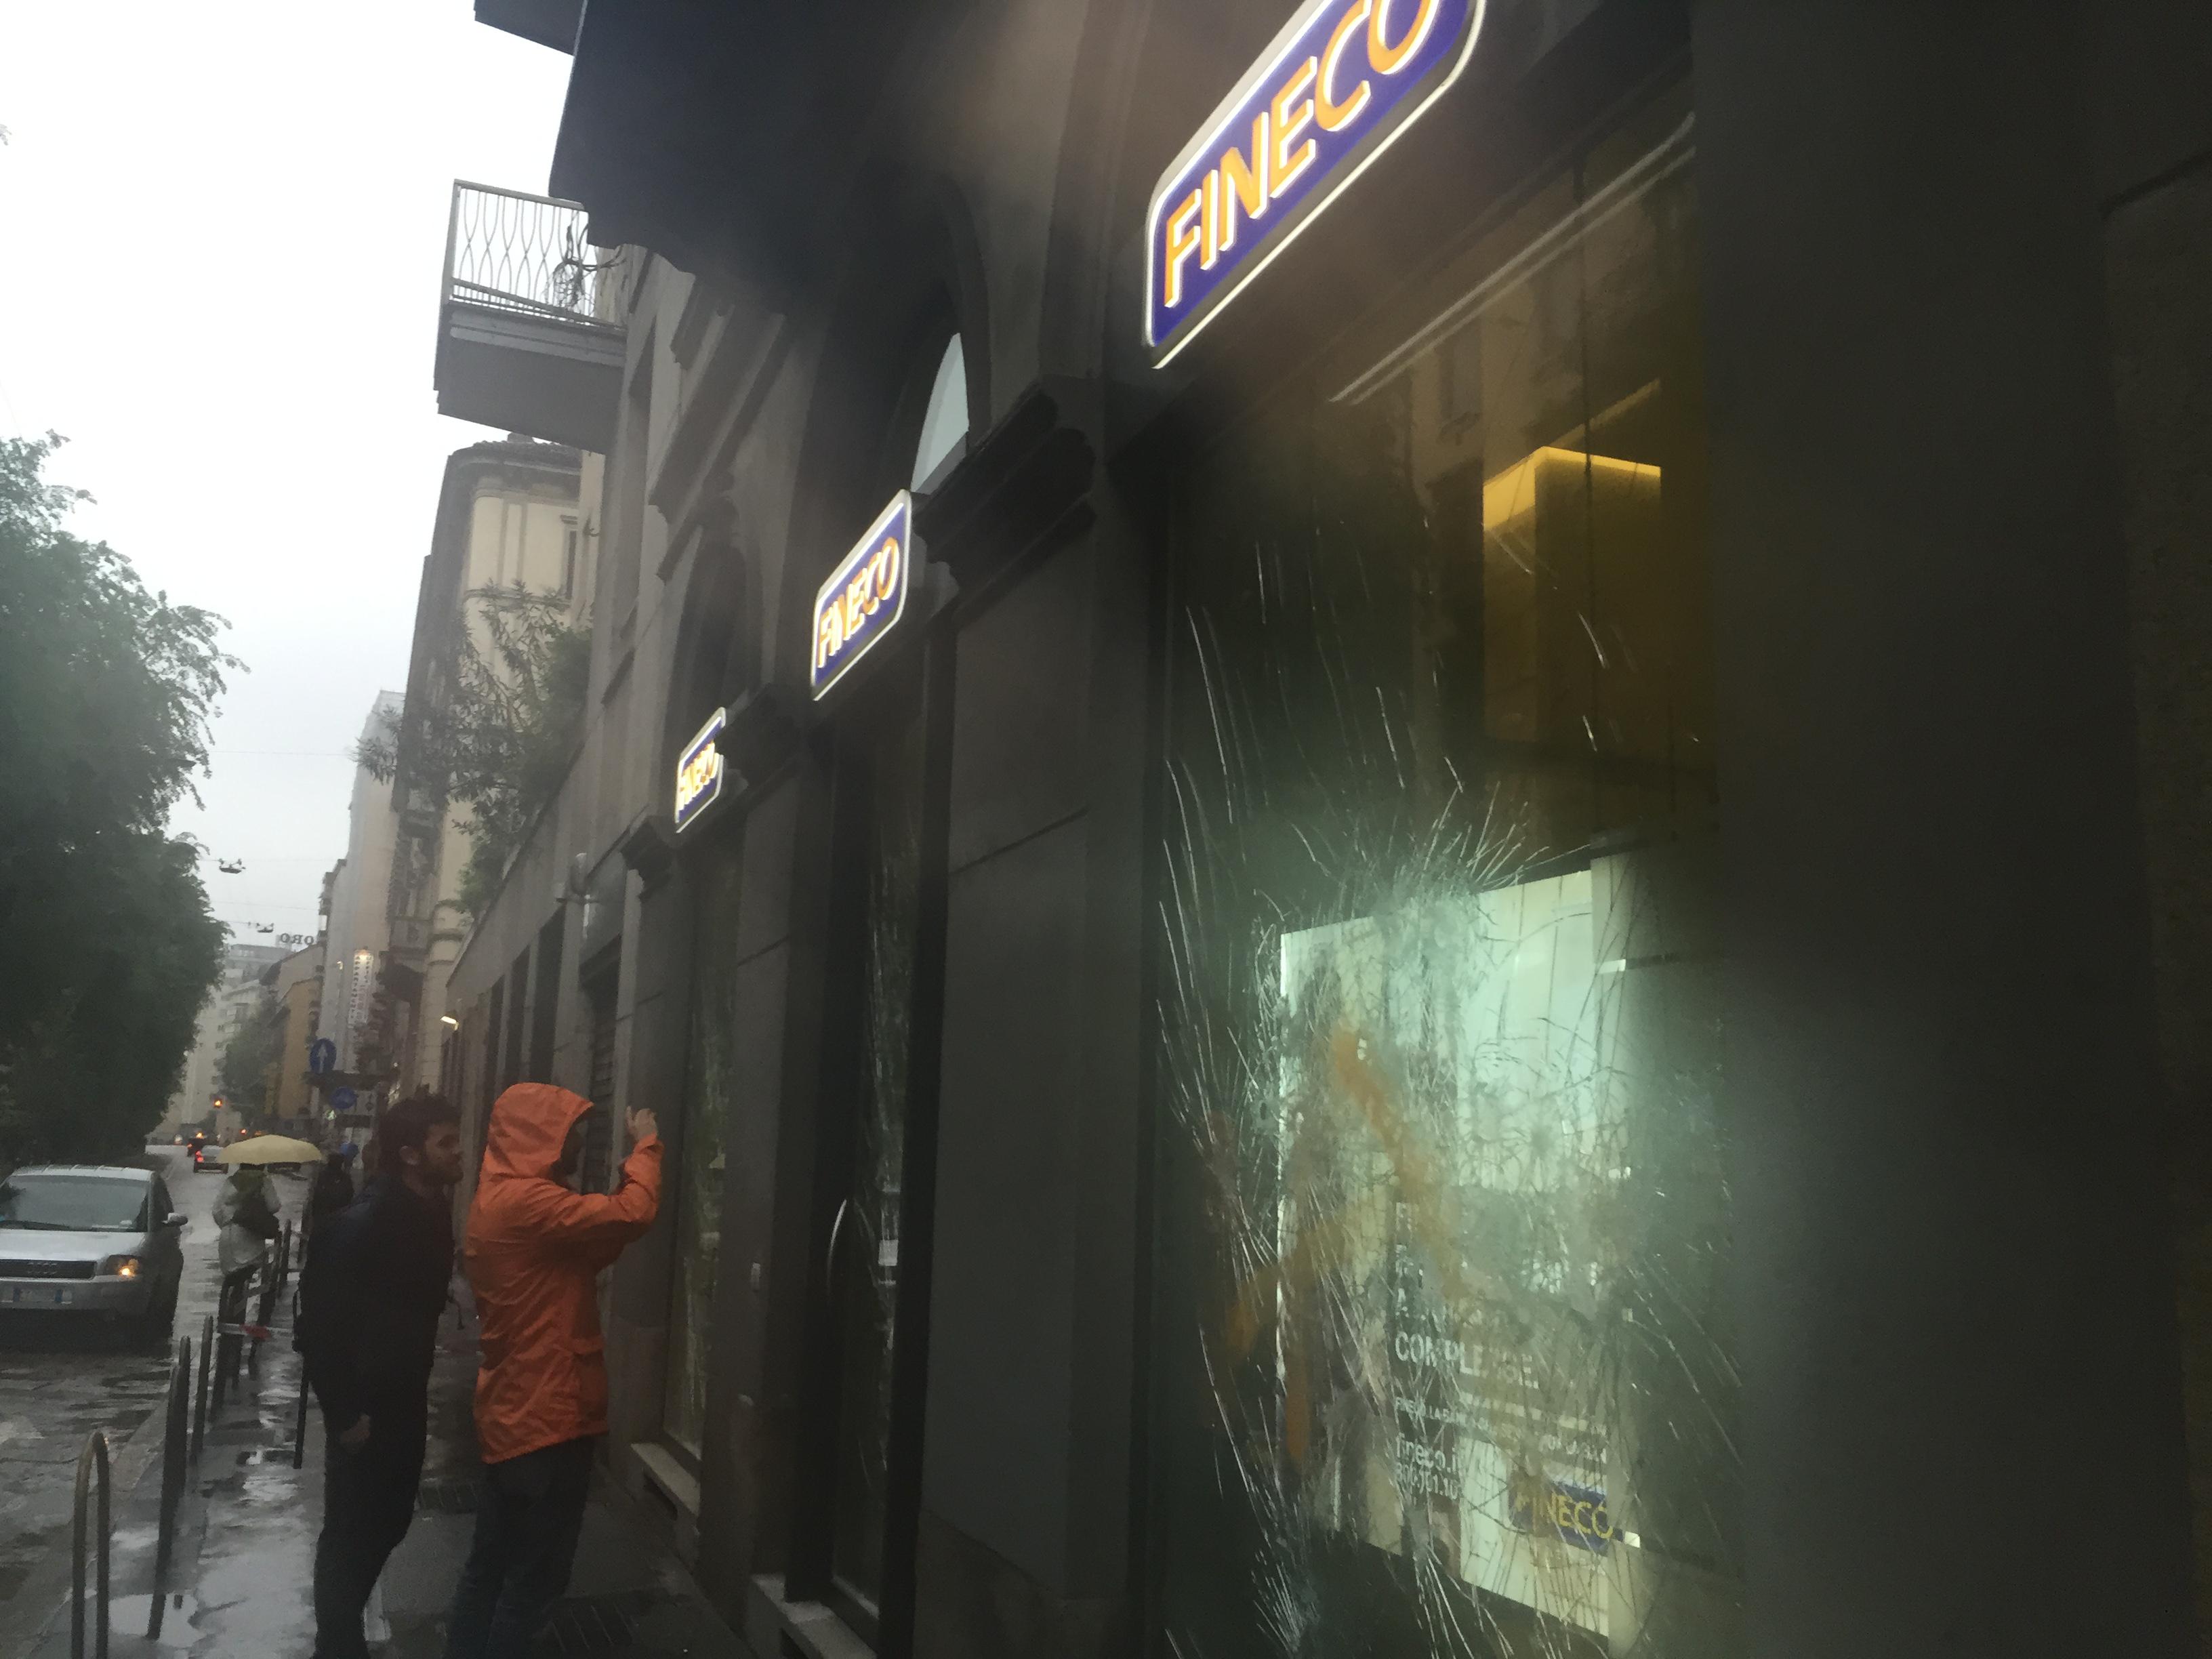 Alcuni passanti fotografano i danni dei manifestanti ai danni delle vetrine Fineco